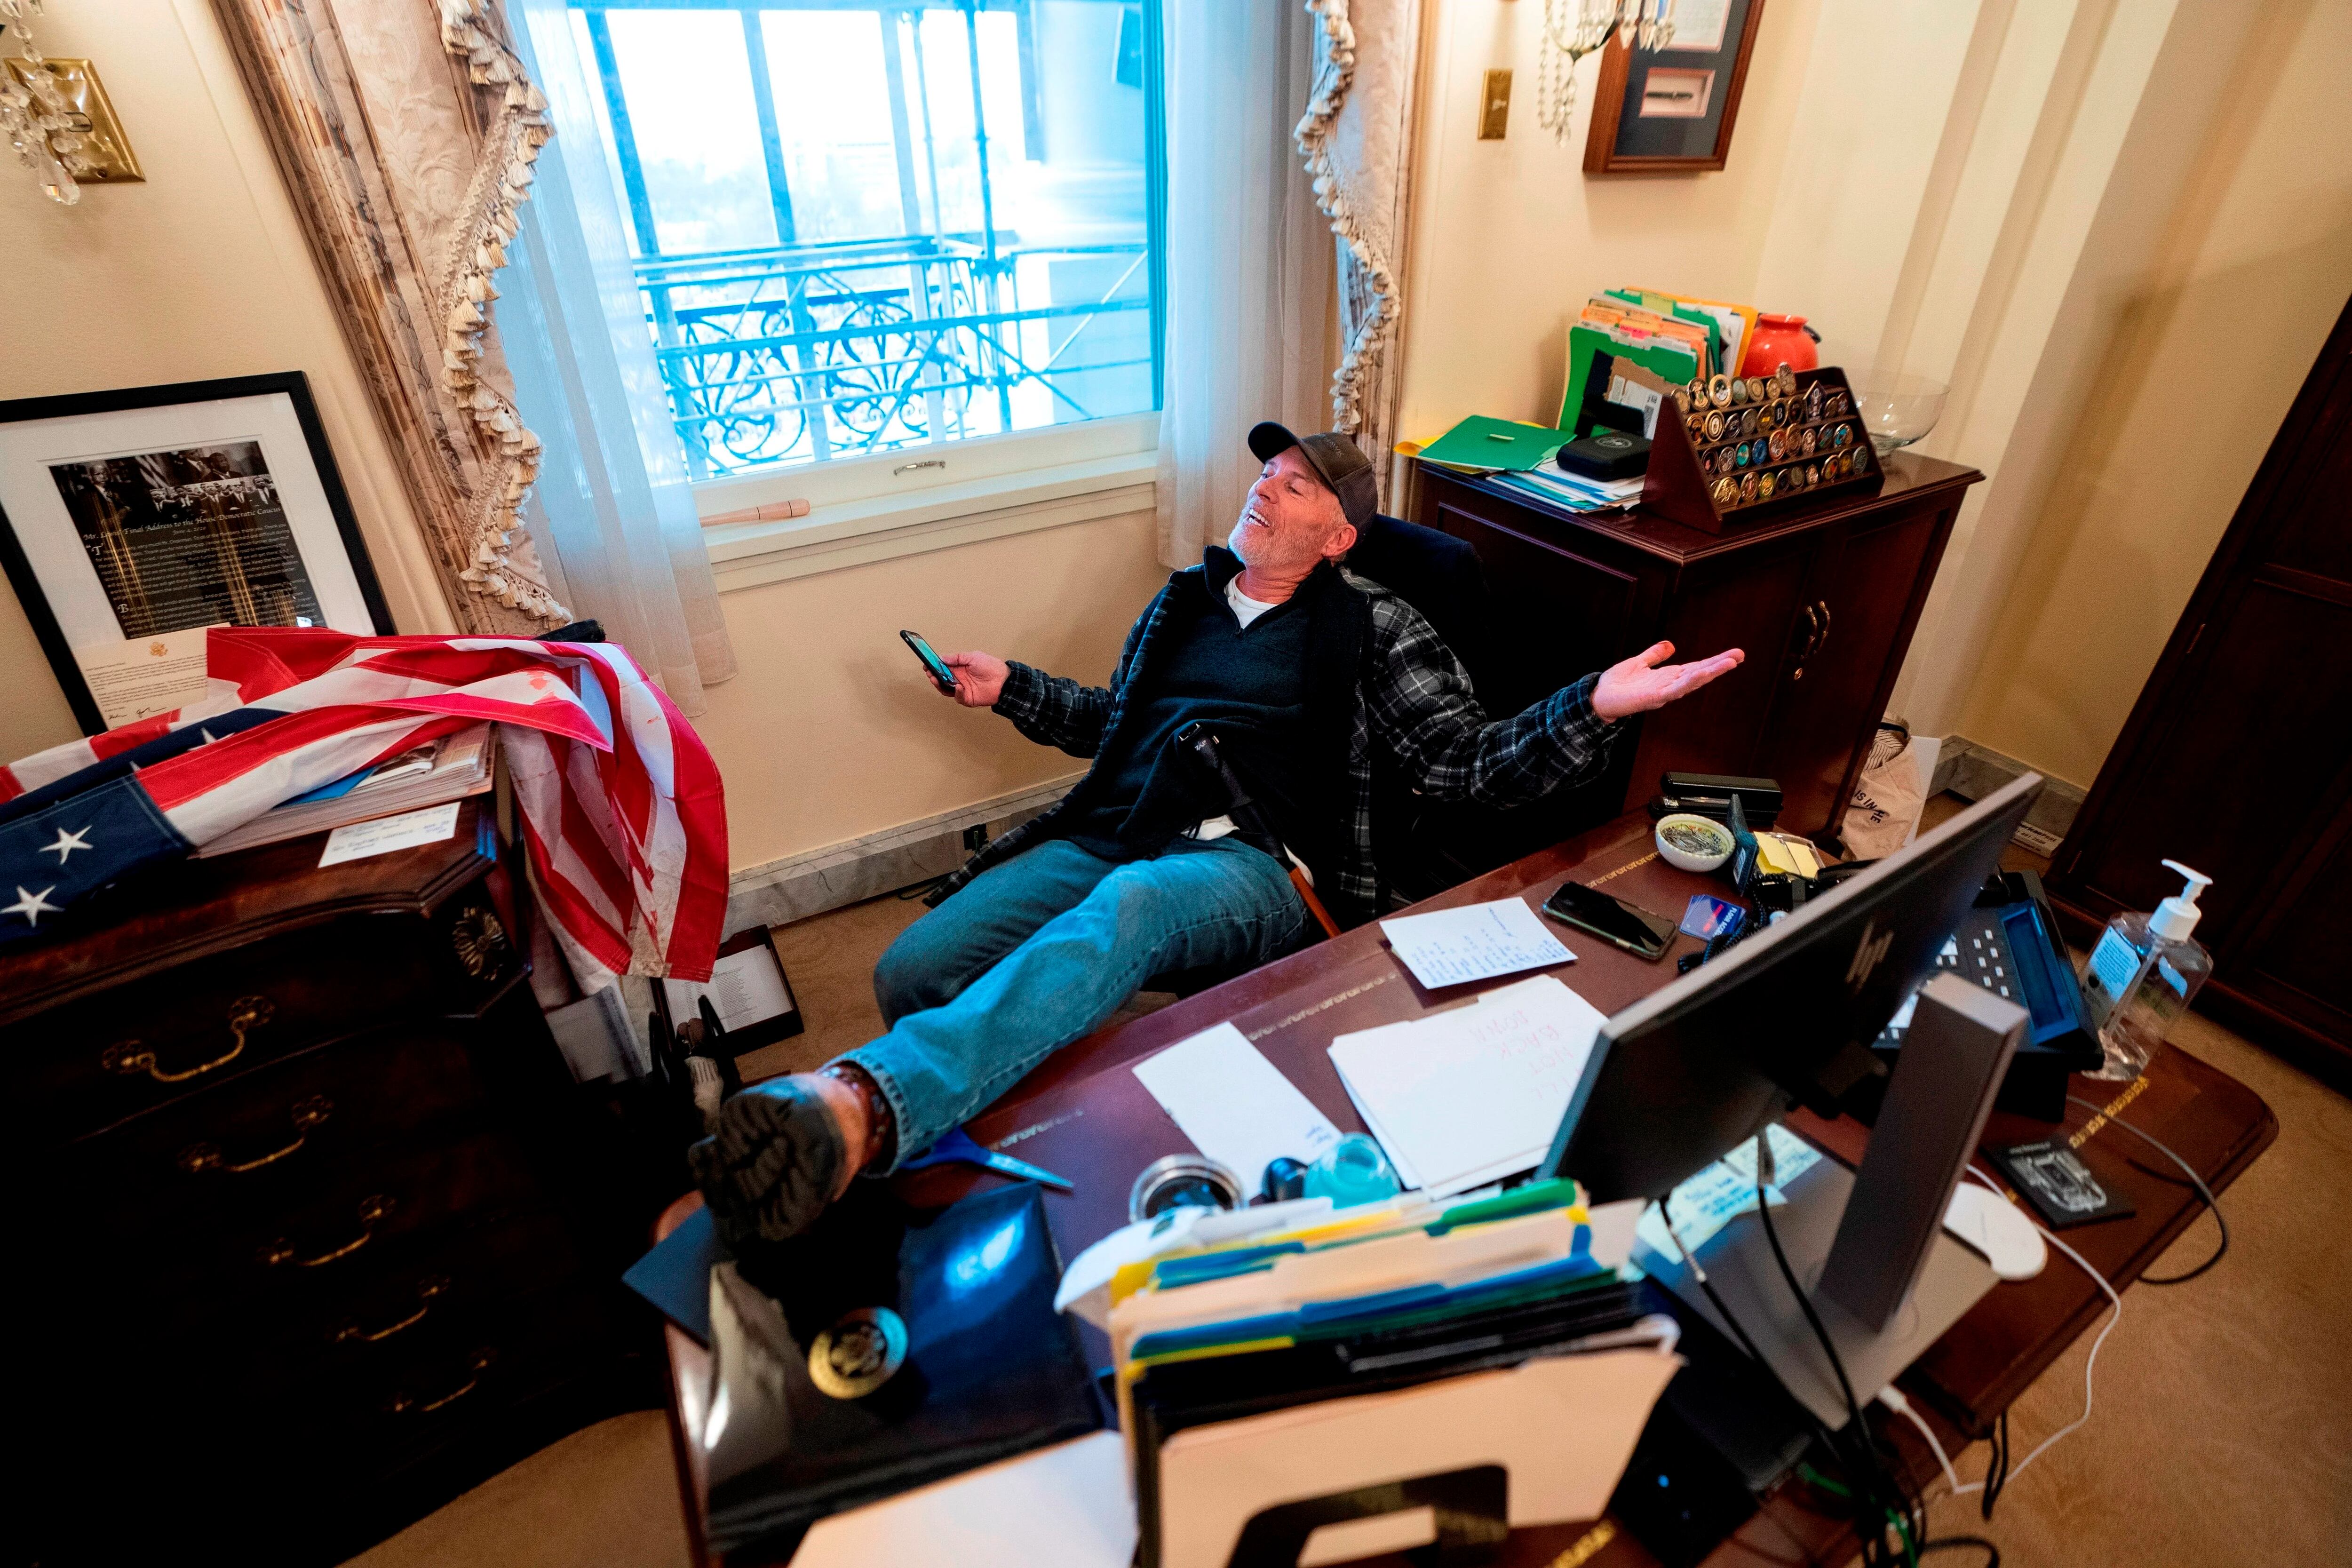 Un seguidor de Donald Trump, identificado como Richard Barnett, ocupó el escritorio de la presidenta de la Cámara Baja, Nancy Pelosi, luego de irrumpir en el Capitolio estadounidense durante protestas el 6 de enero, en Washington (Estados Unidos). EFE/ JIM LO SCALZO
